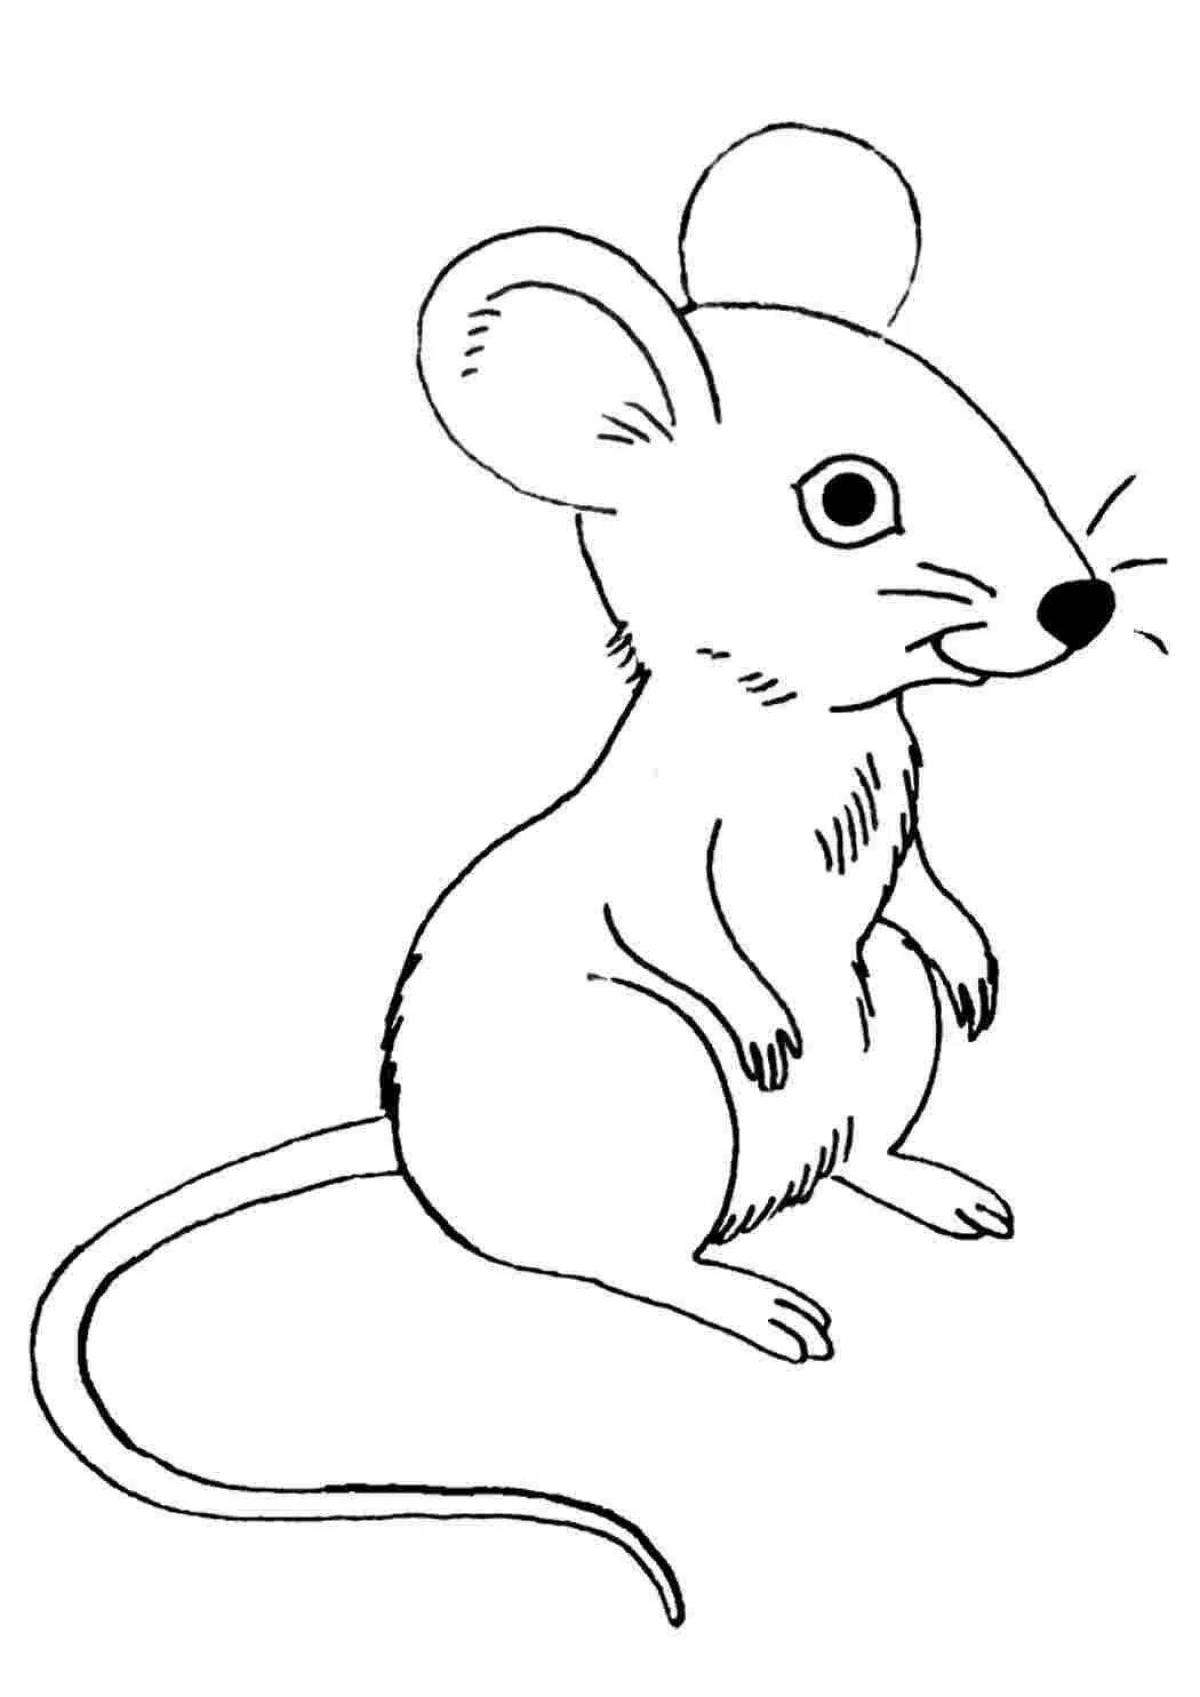 Уникальная раскраска мышь для детей 3-4 лет